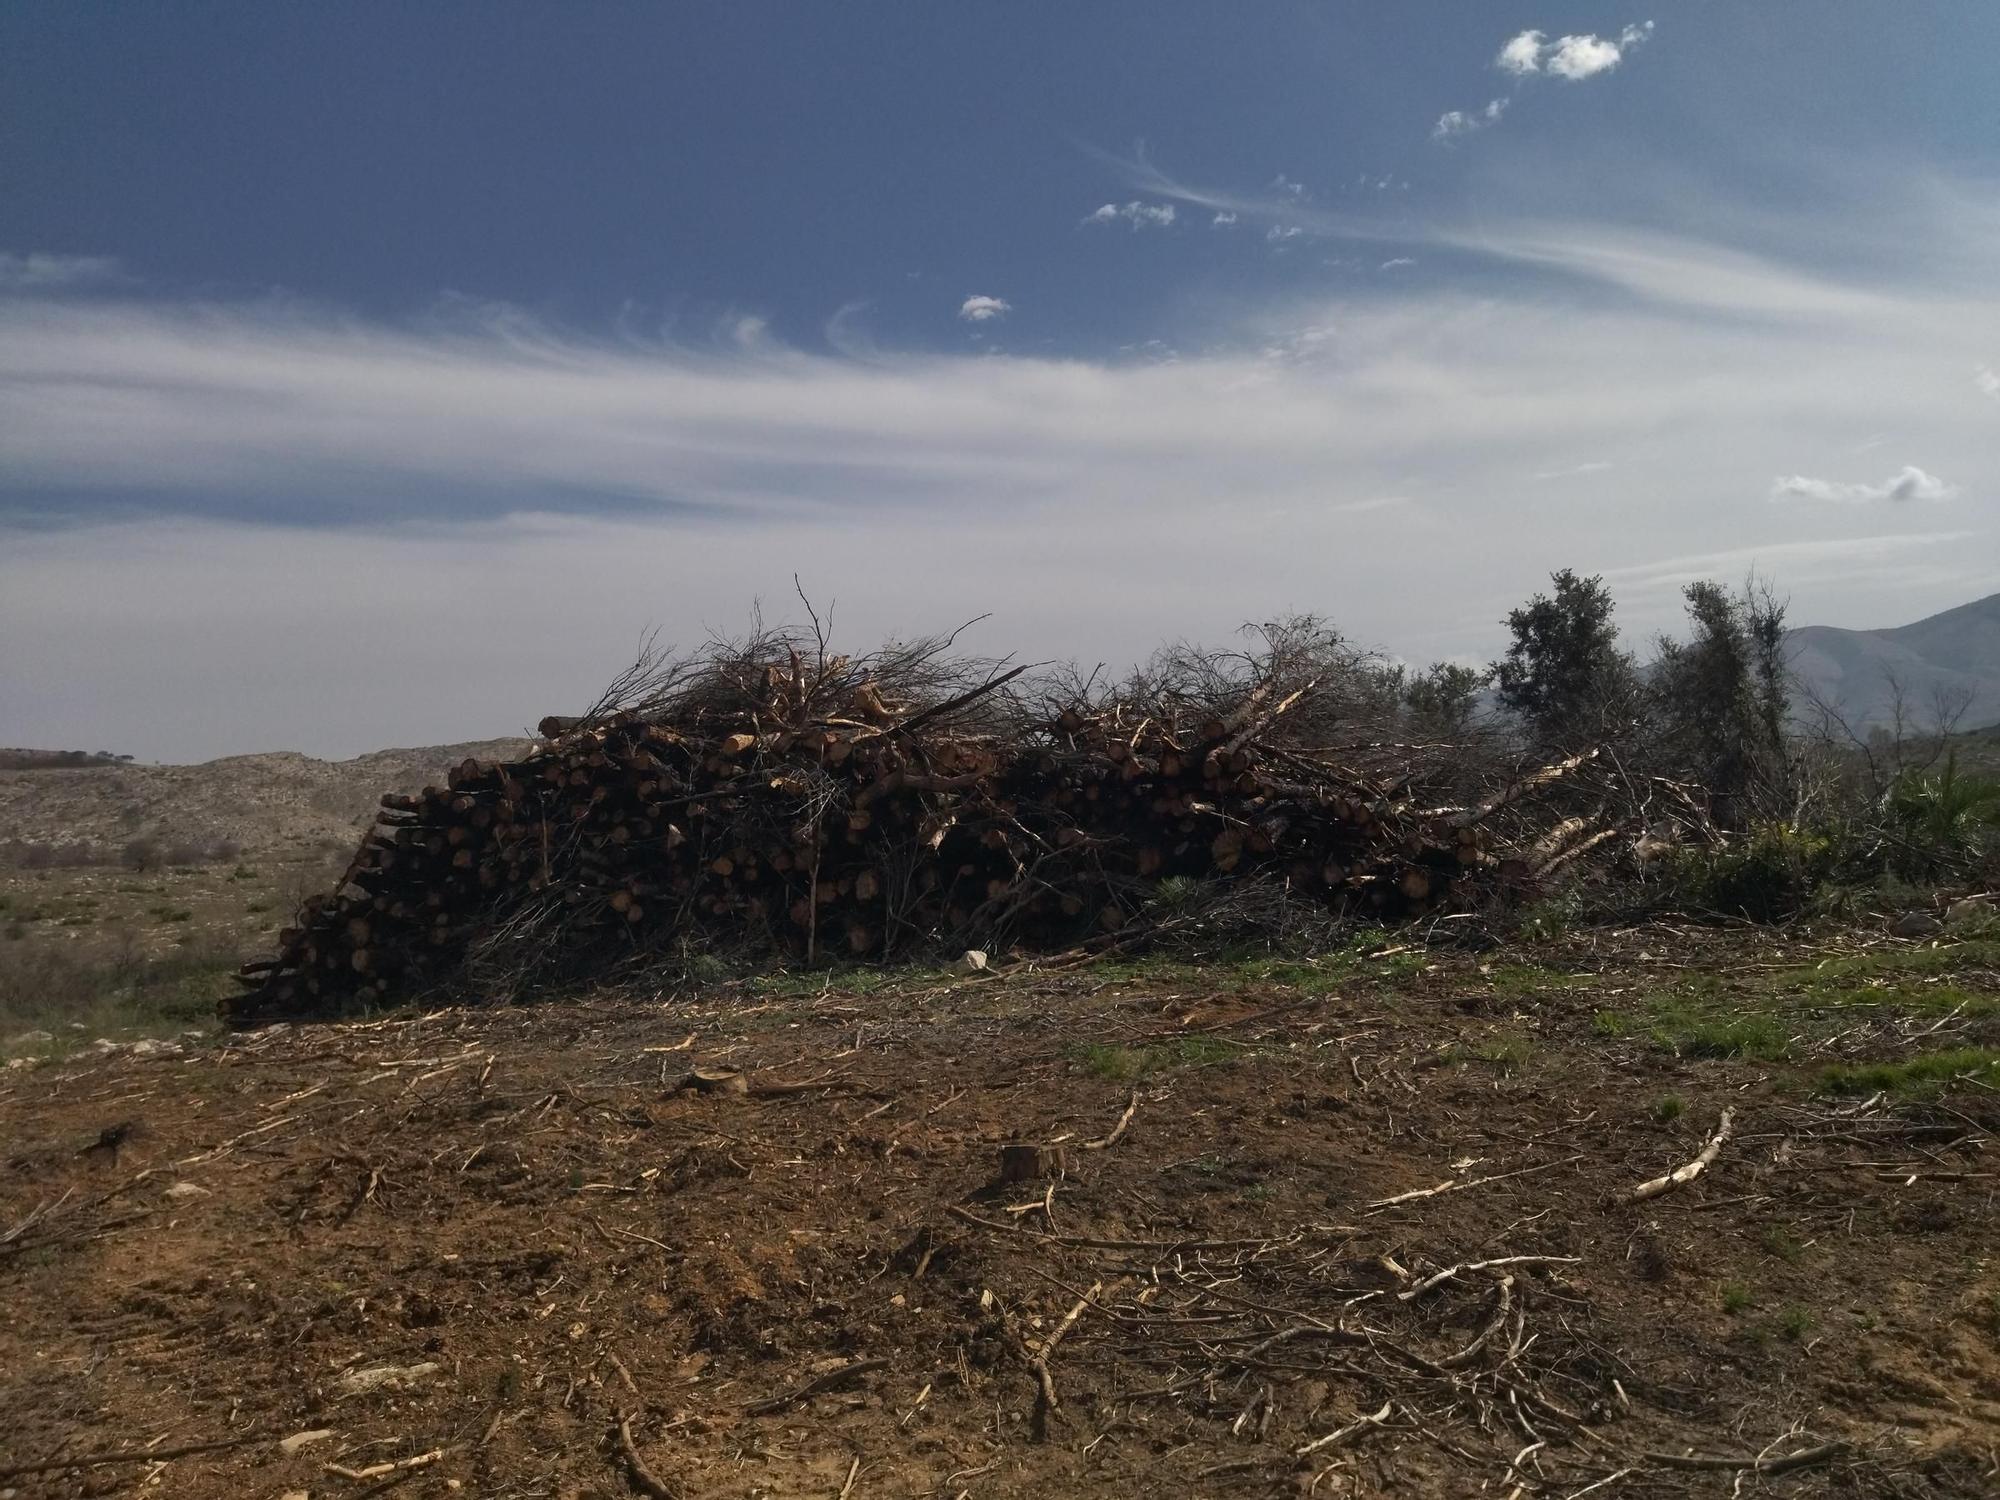 Regeneración tras la catástrofe: miles de pinos carbonizados y ahora talados y apilados